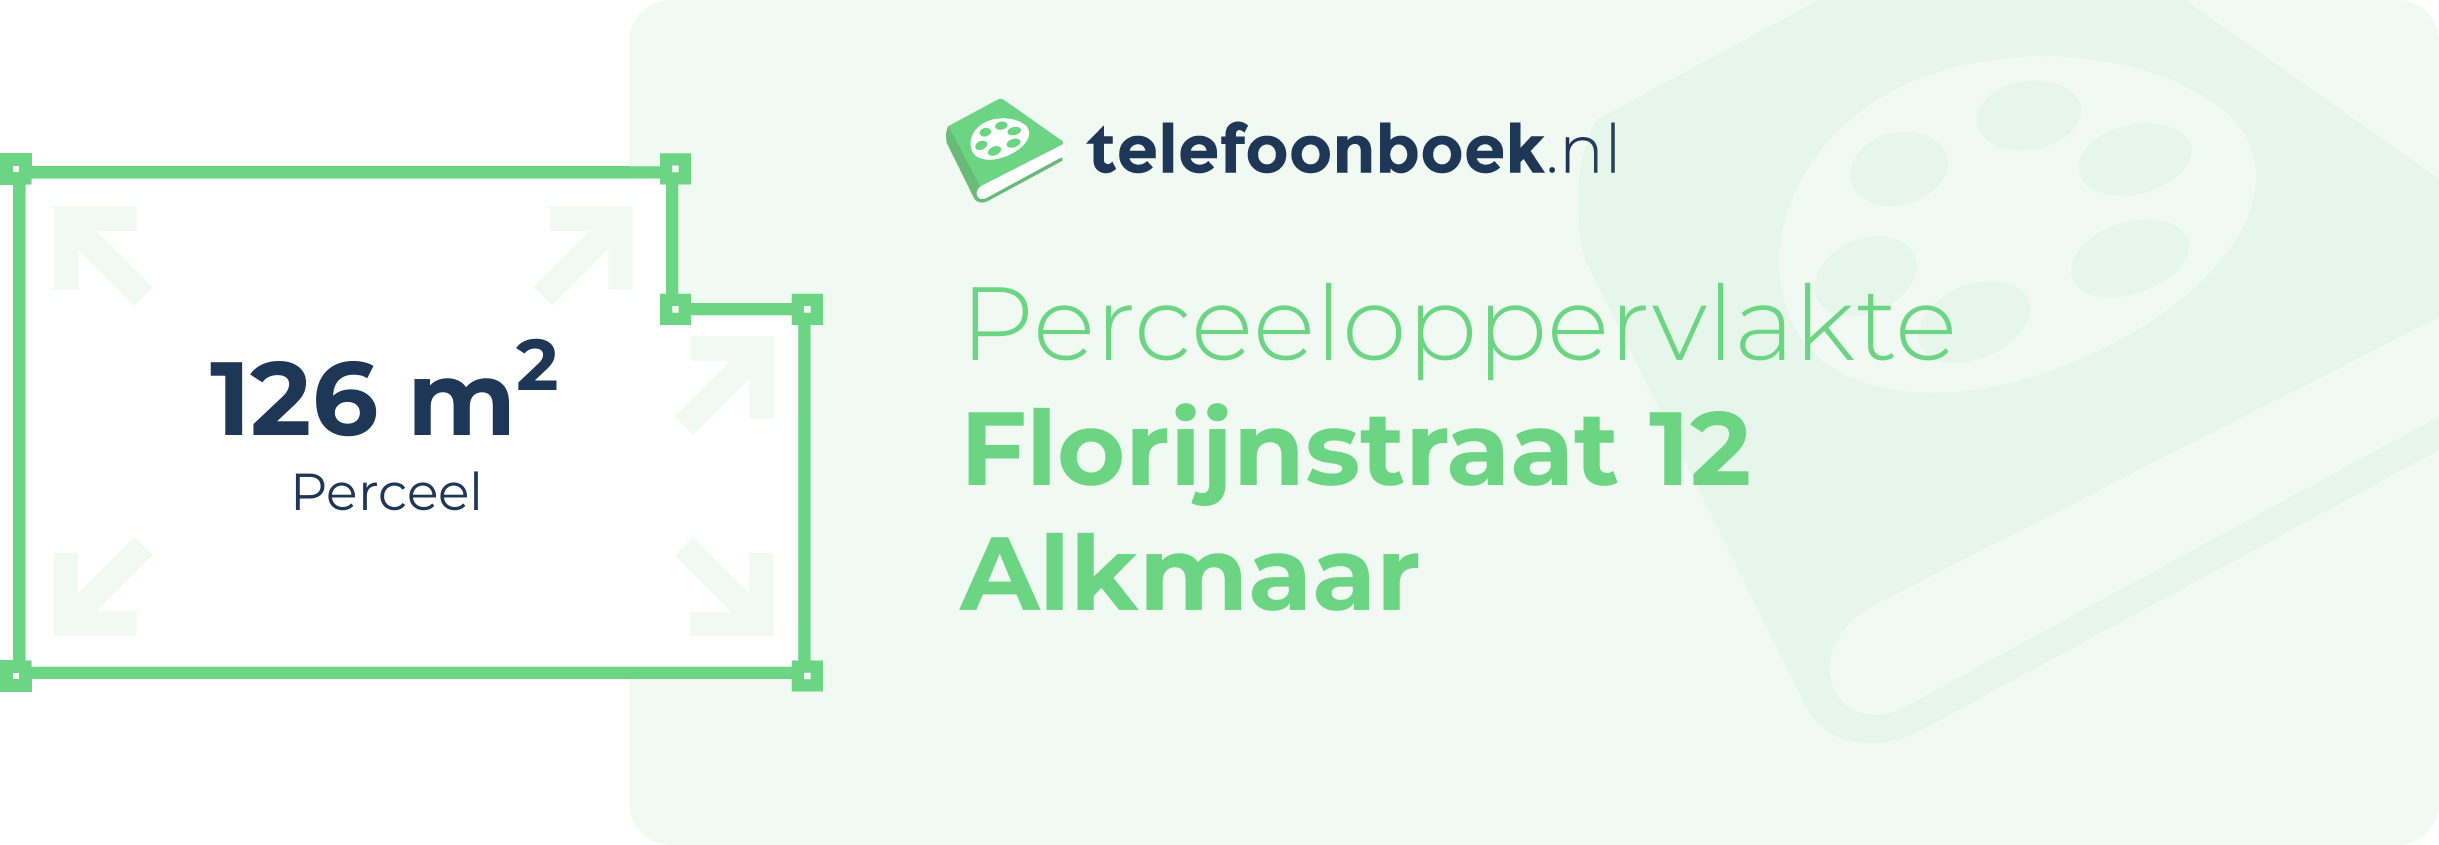 Perceeloppervlakte Florijnstraat 12 Alkmaar